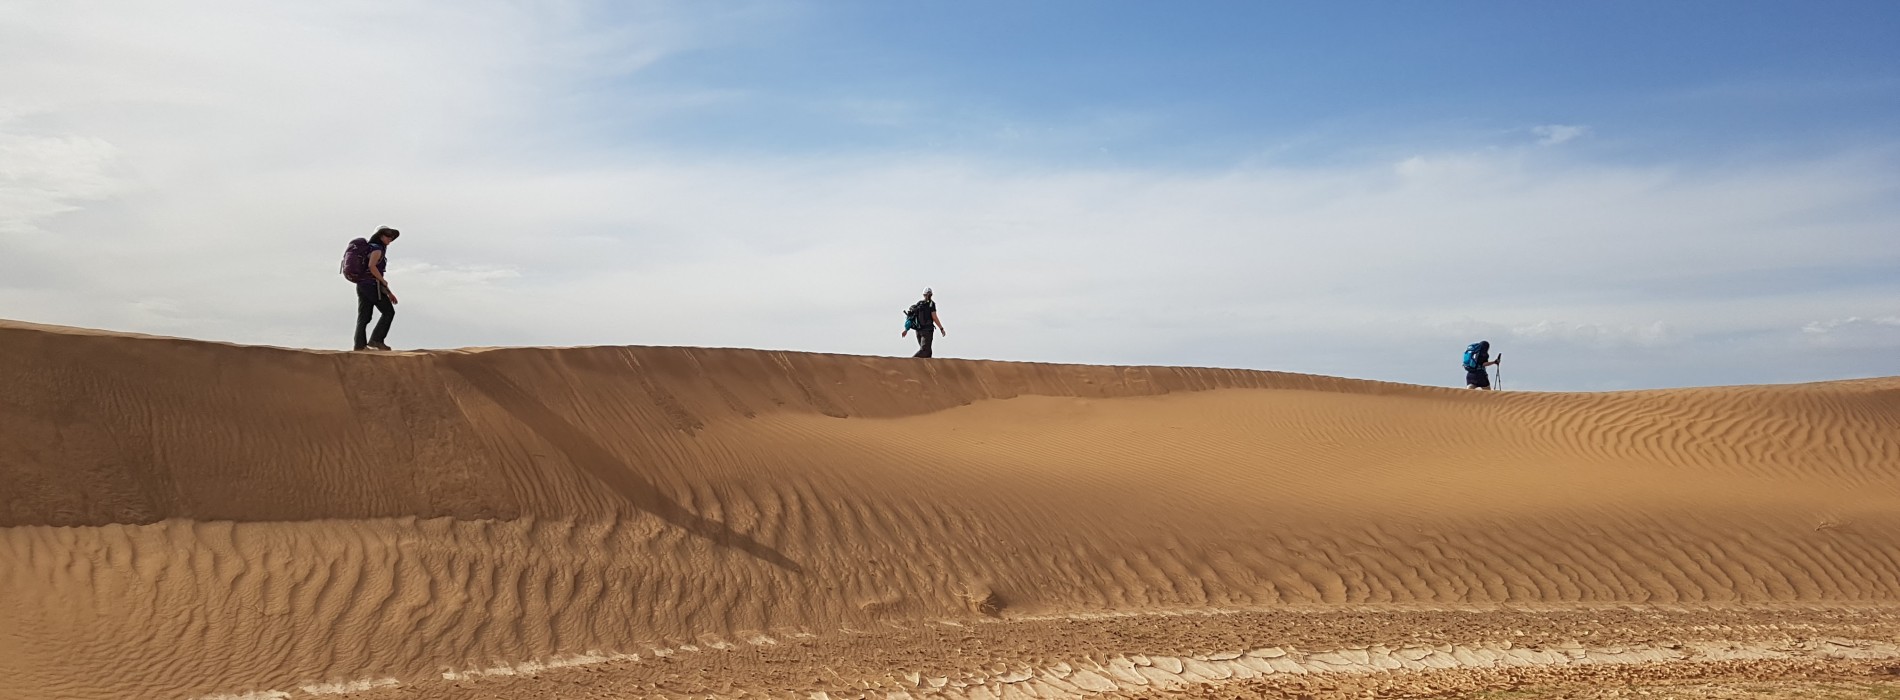 Trekking the dunes in the Sahara